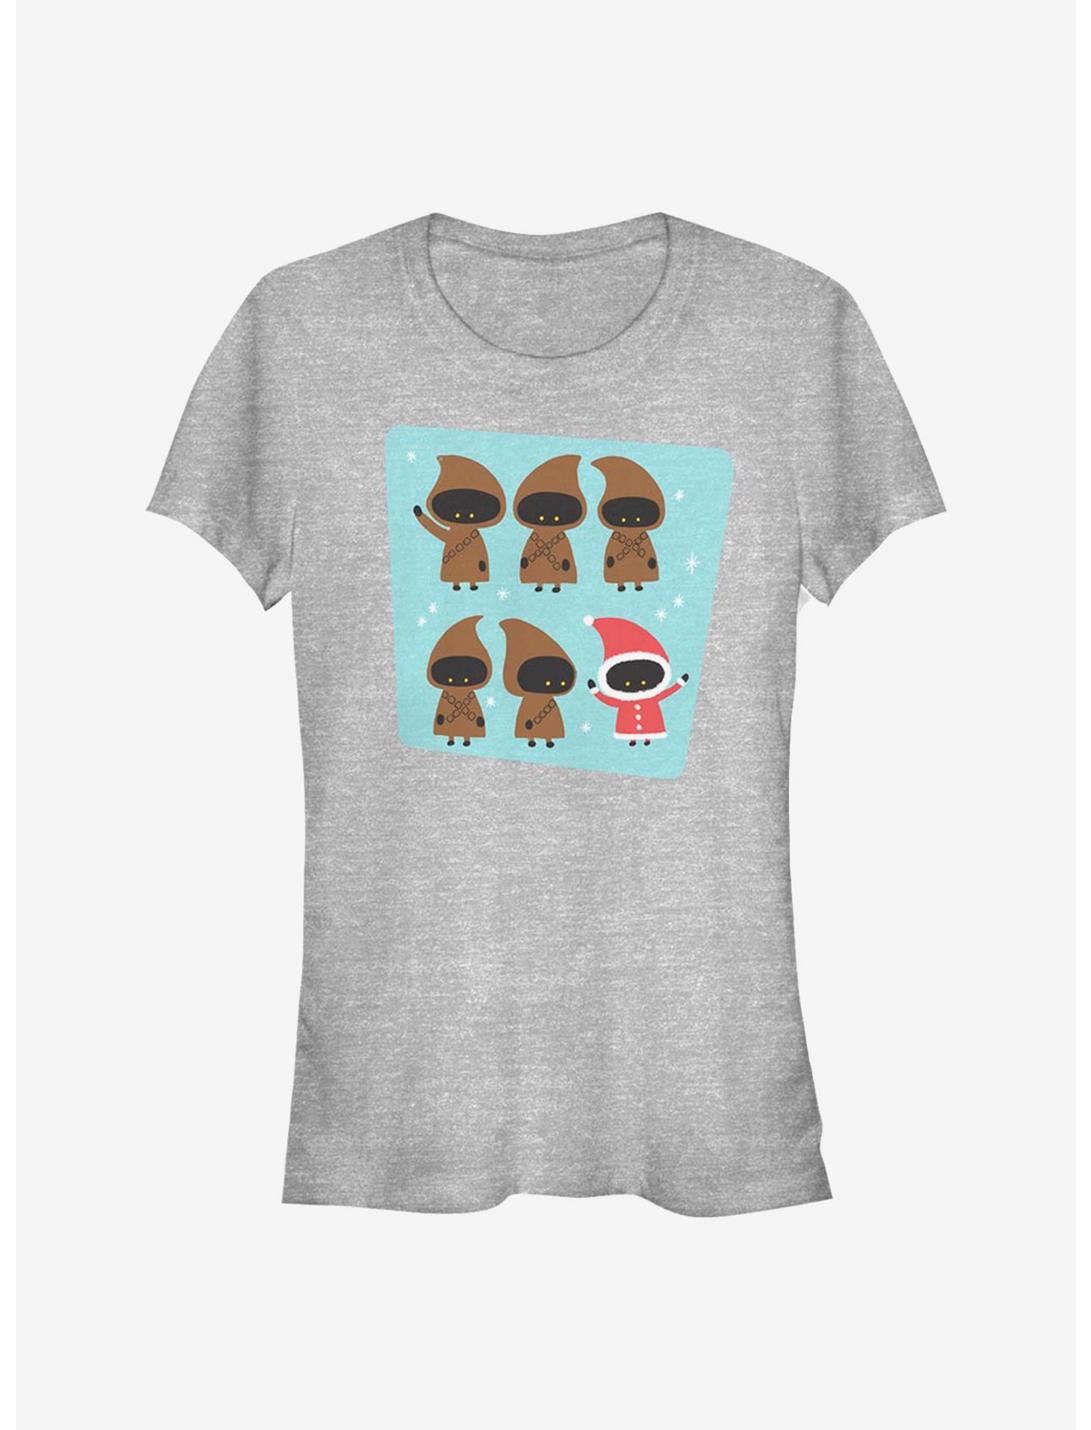 Star Wars Jawas Holiday Stack Girls T-Shirt, ATH HTR, hi-res